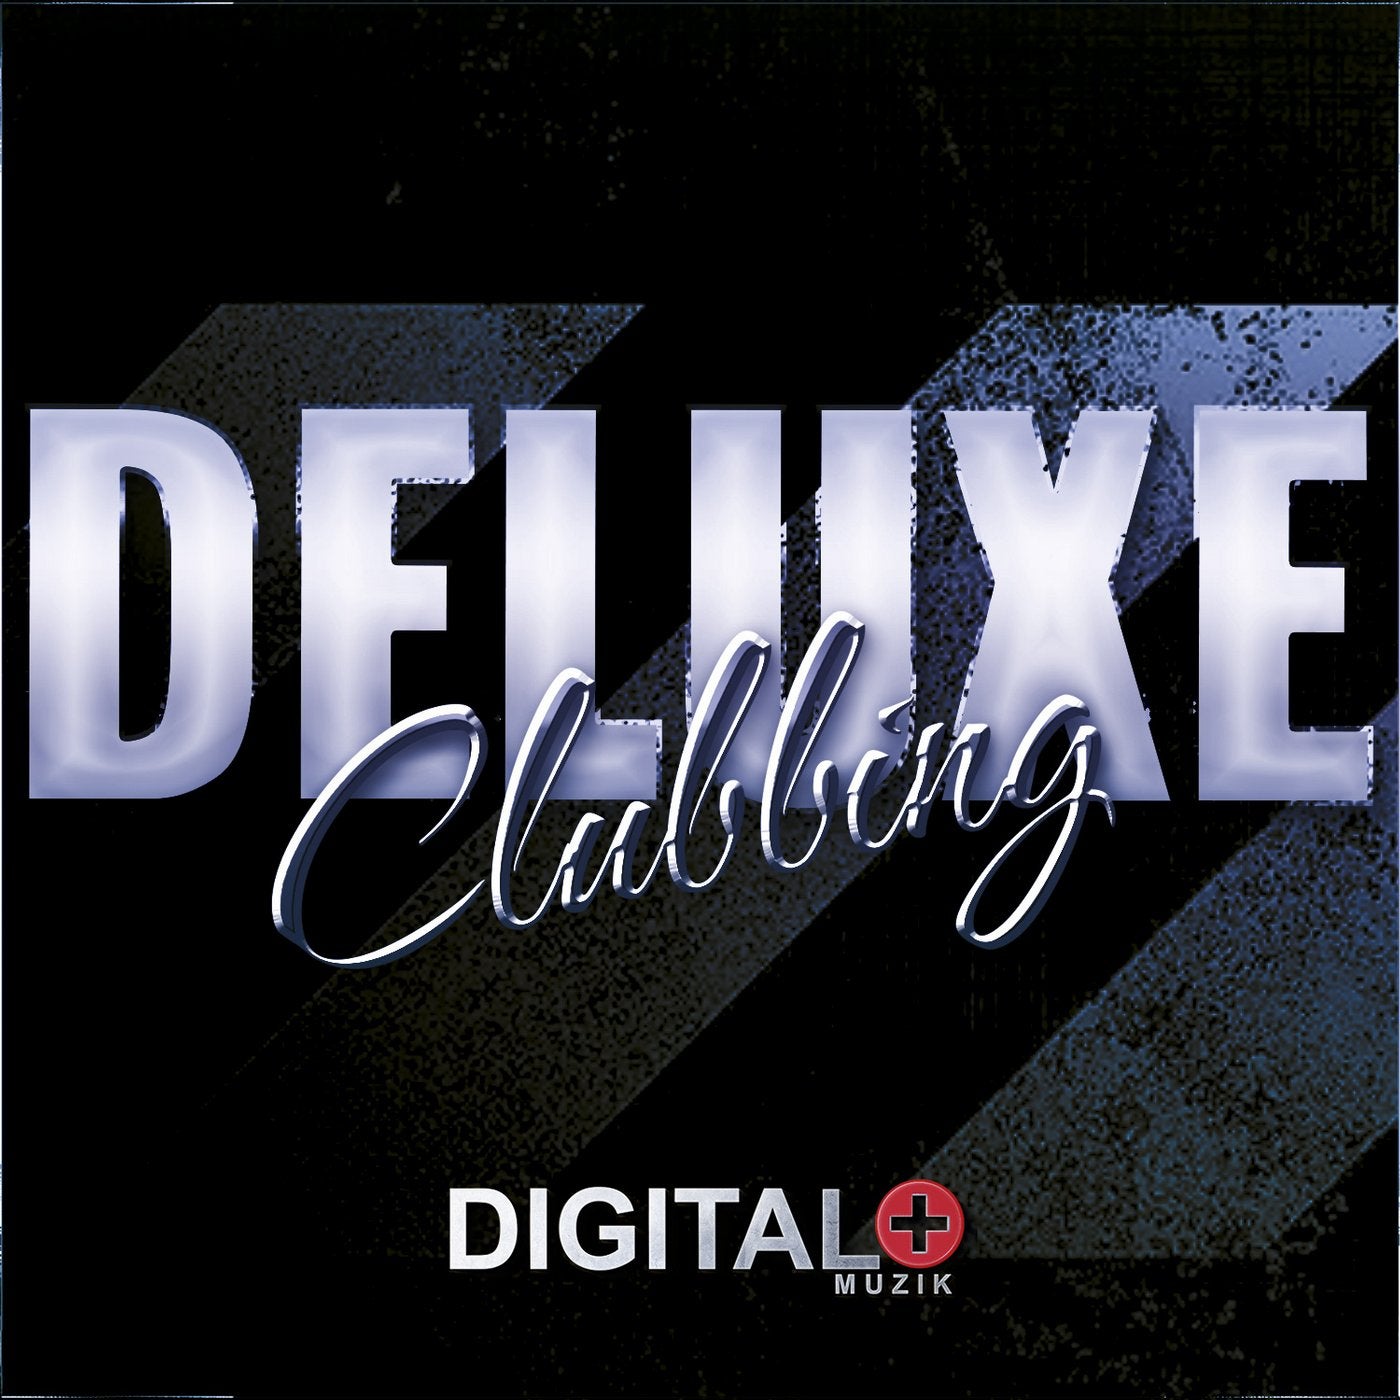 Deluxe Clubbing 05